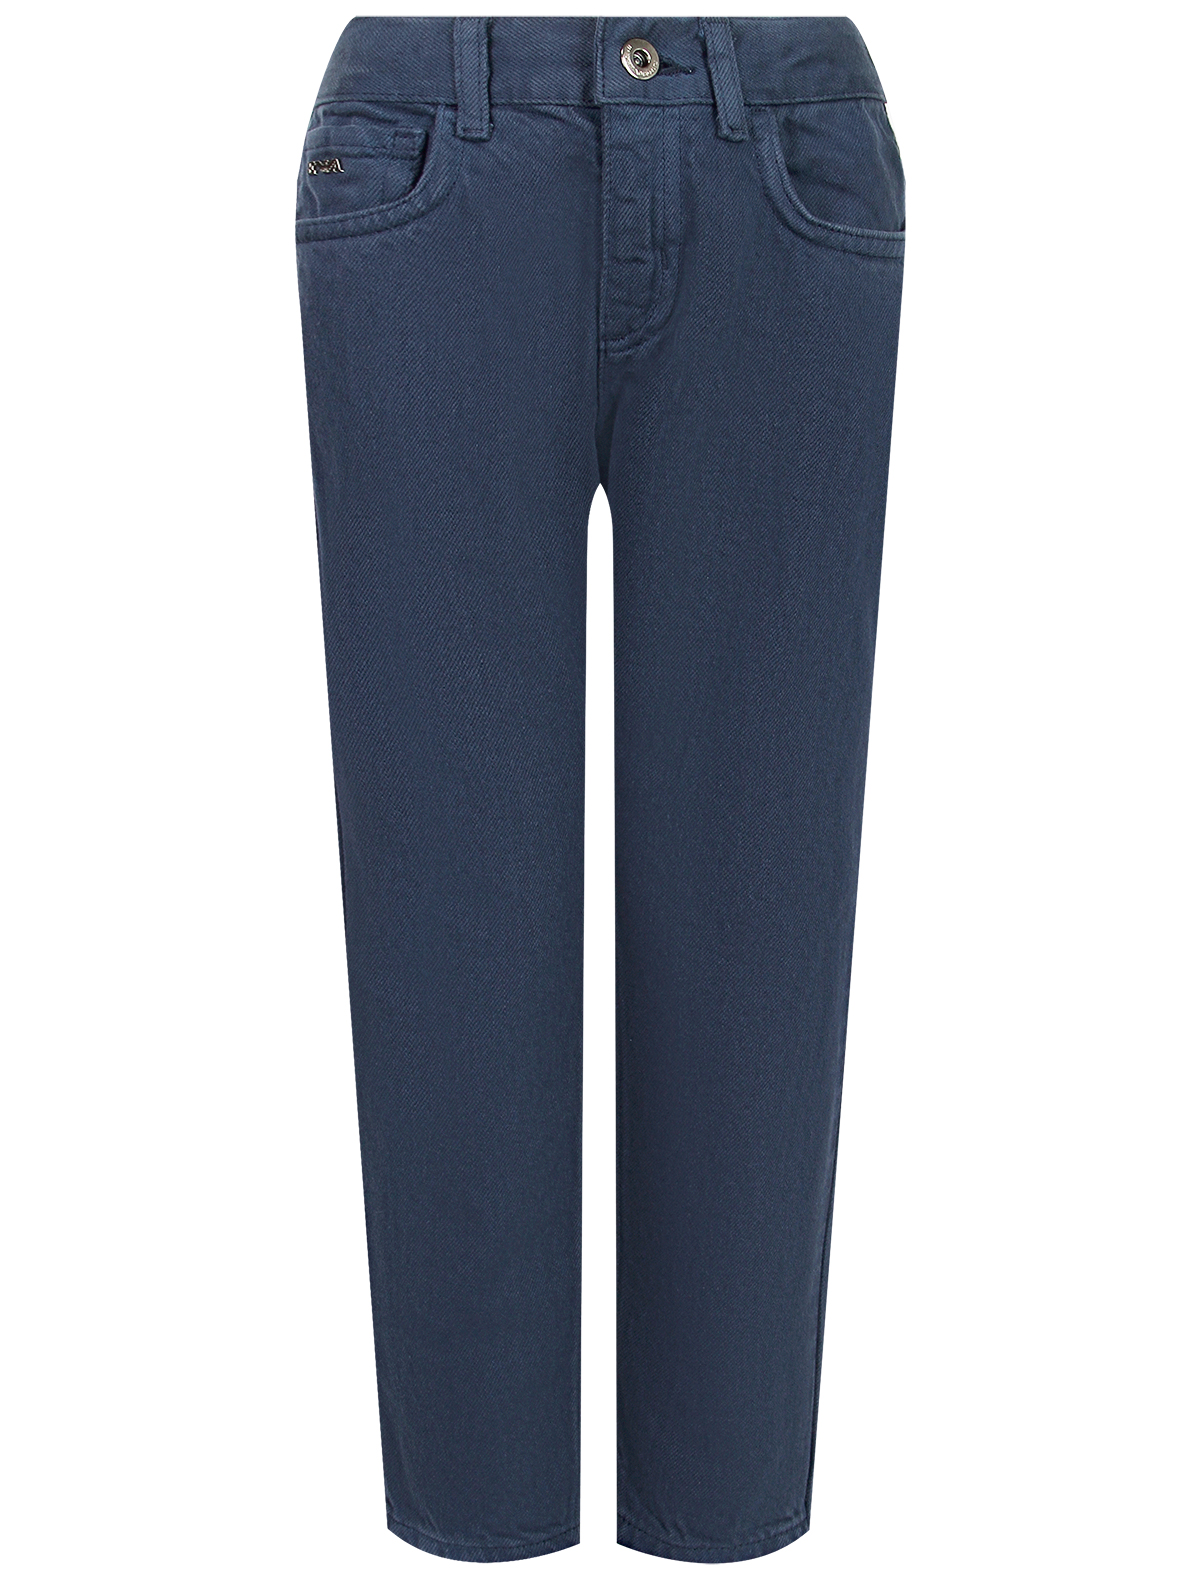 джинсы emporio armani для мальчика, синие